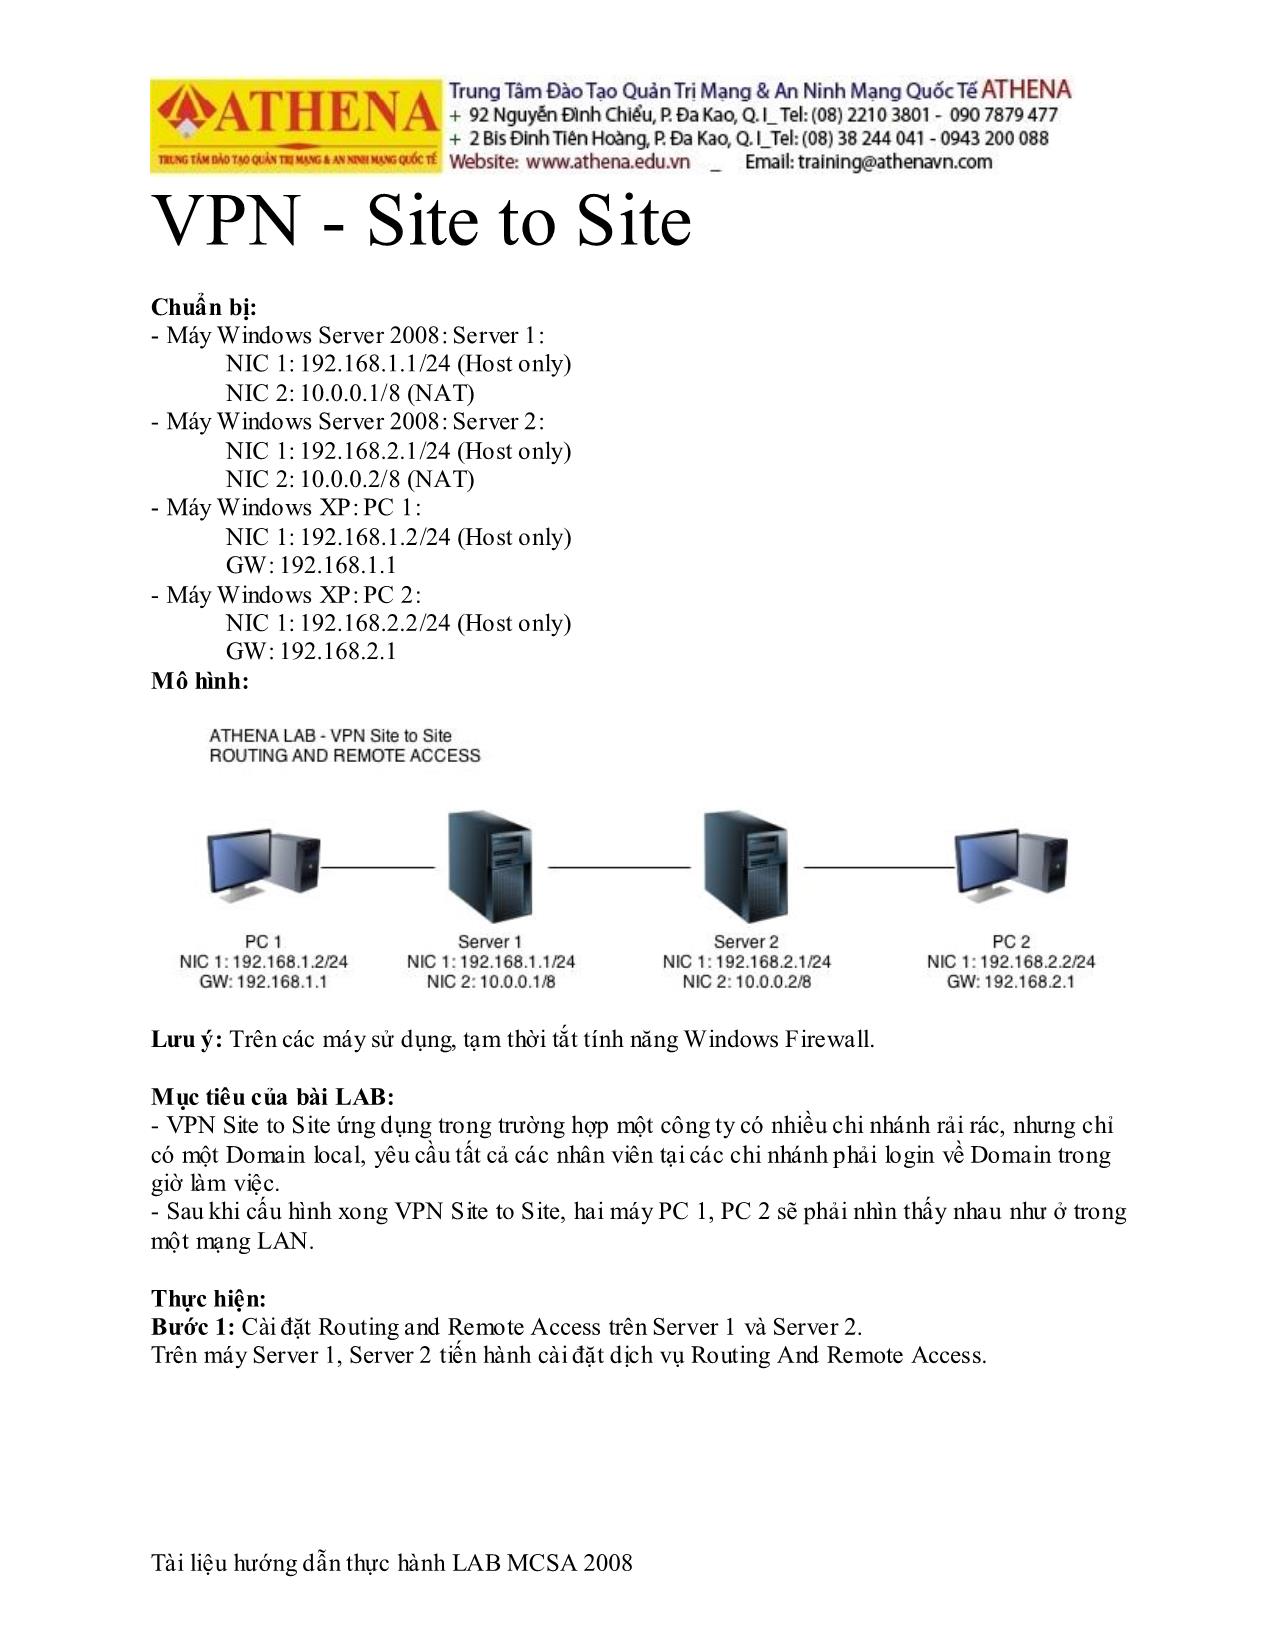 Tài liệu VPN - Site to Site trang 1